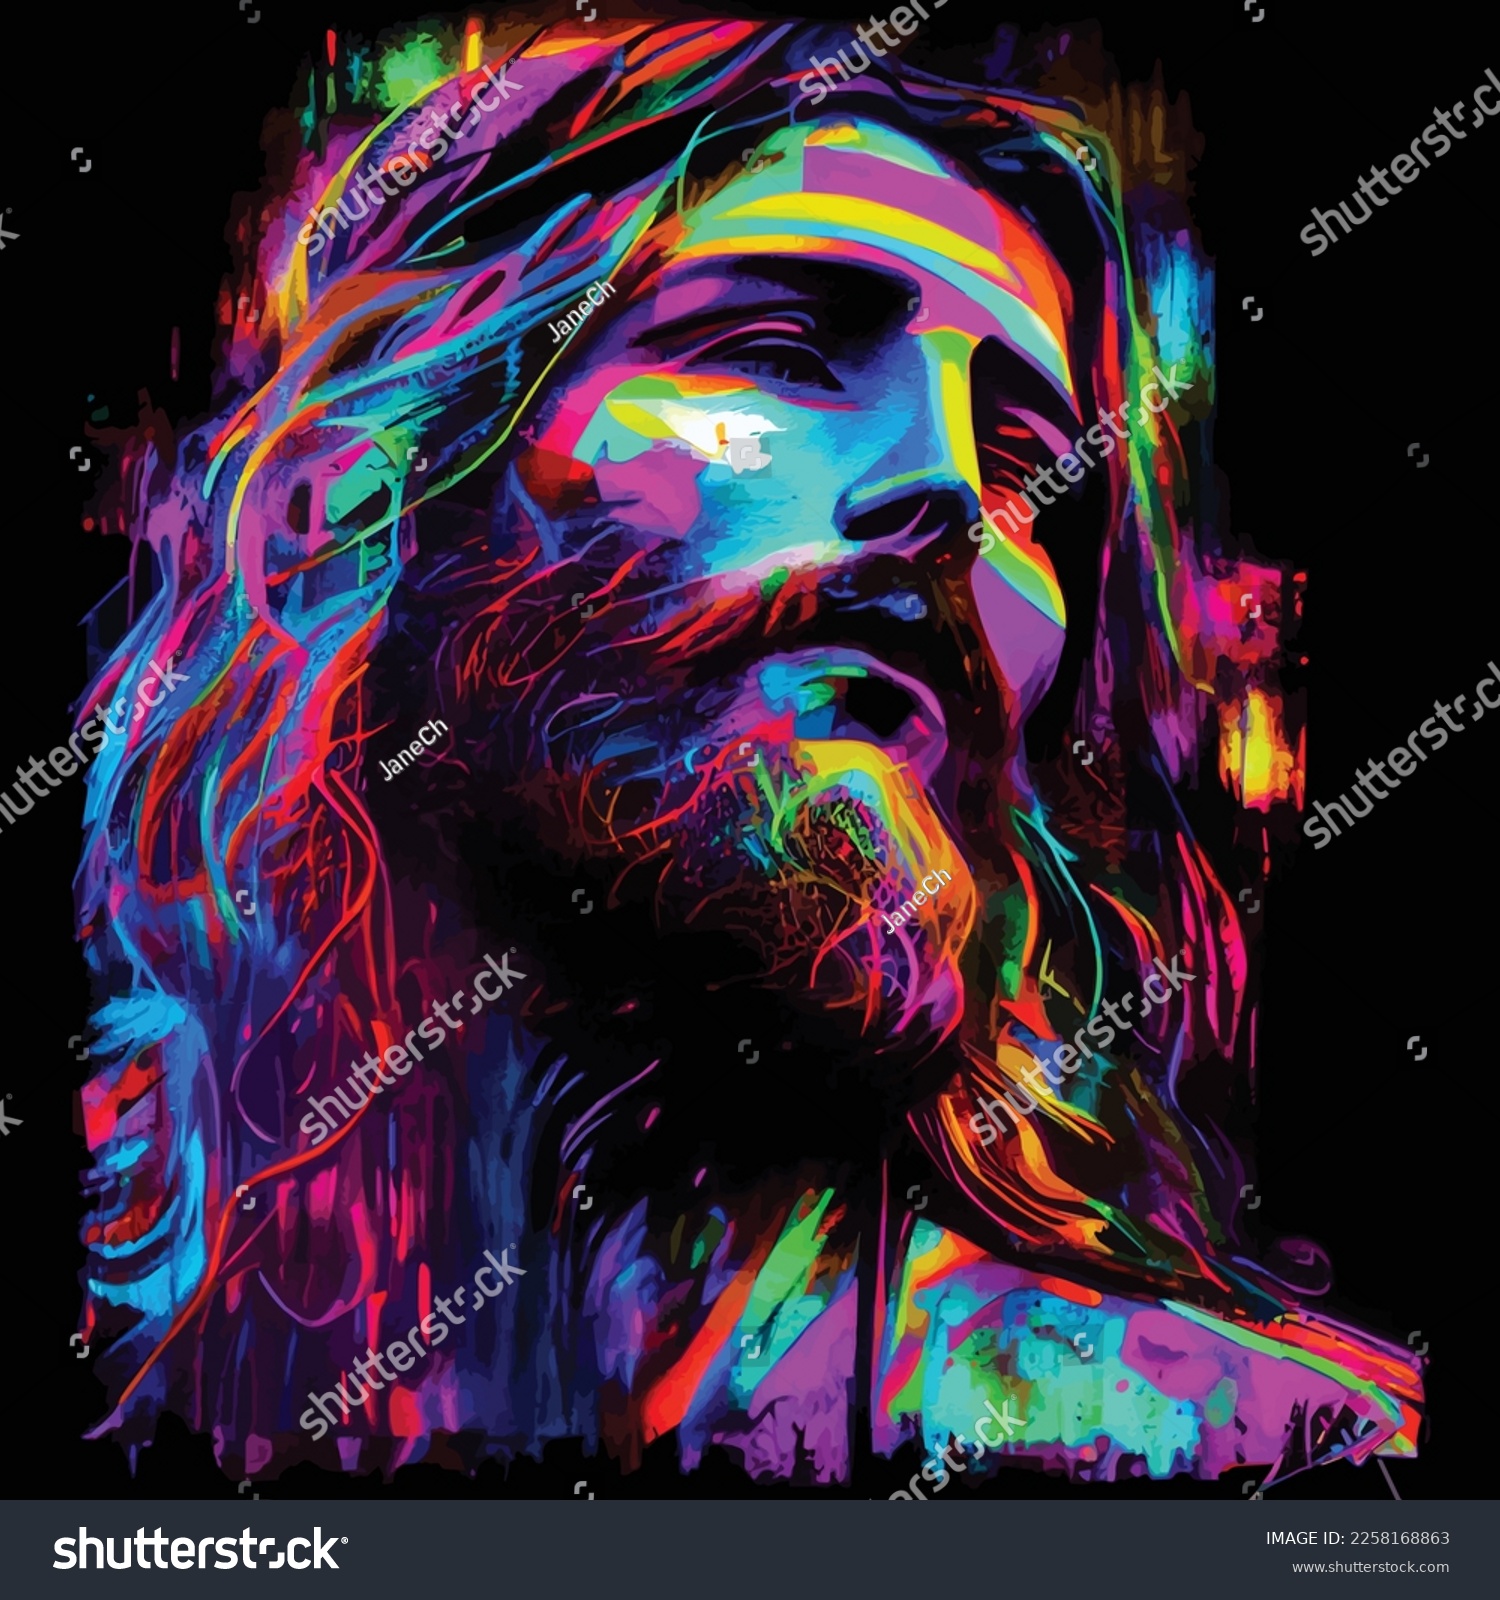 Colorful Jesus Christ Pop Art Painting Pop Art Portraits Print Poster
 #2258168863